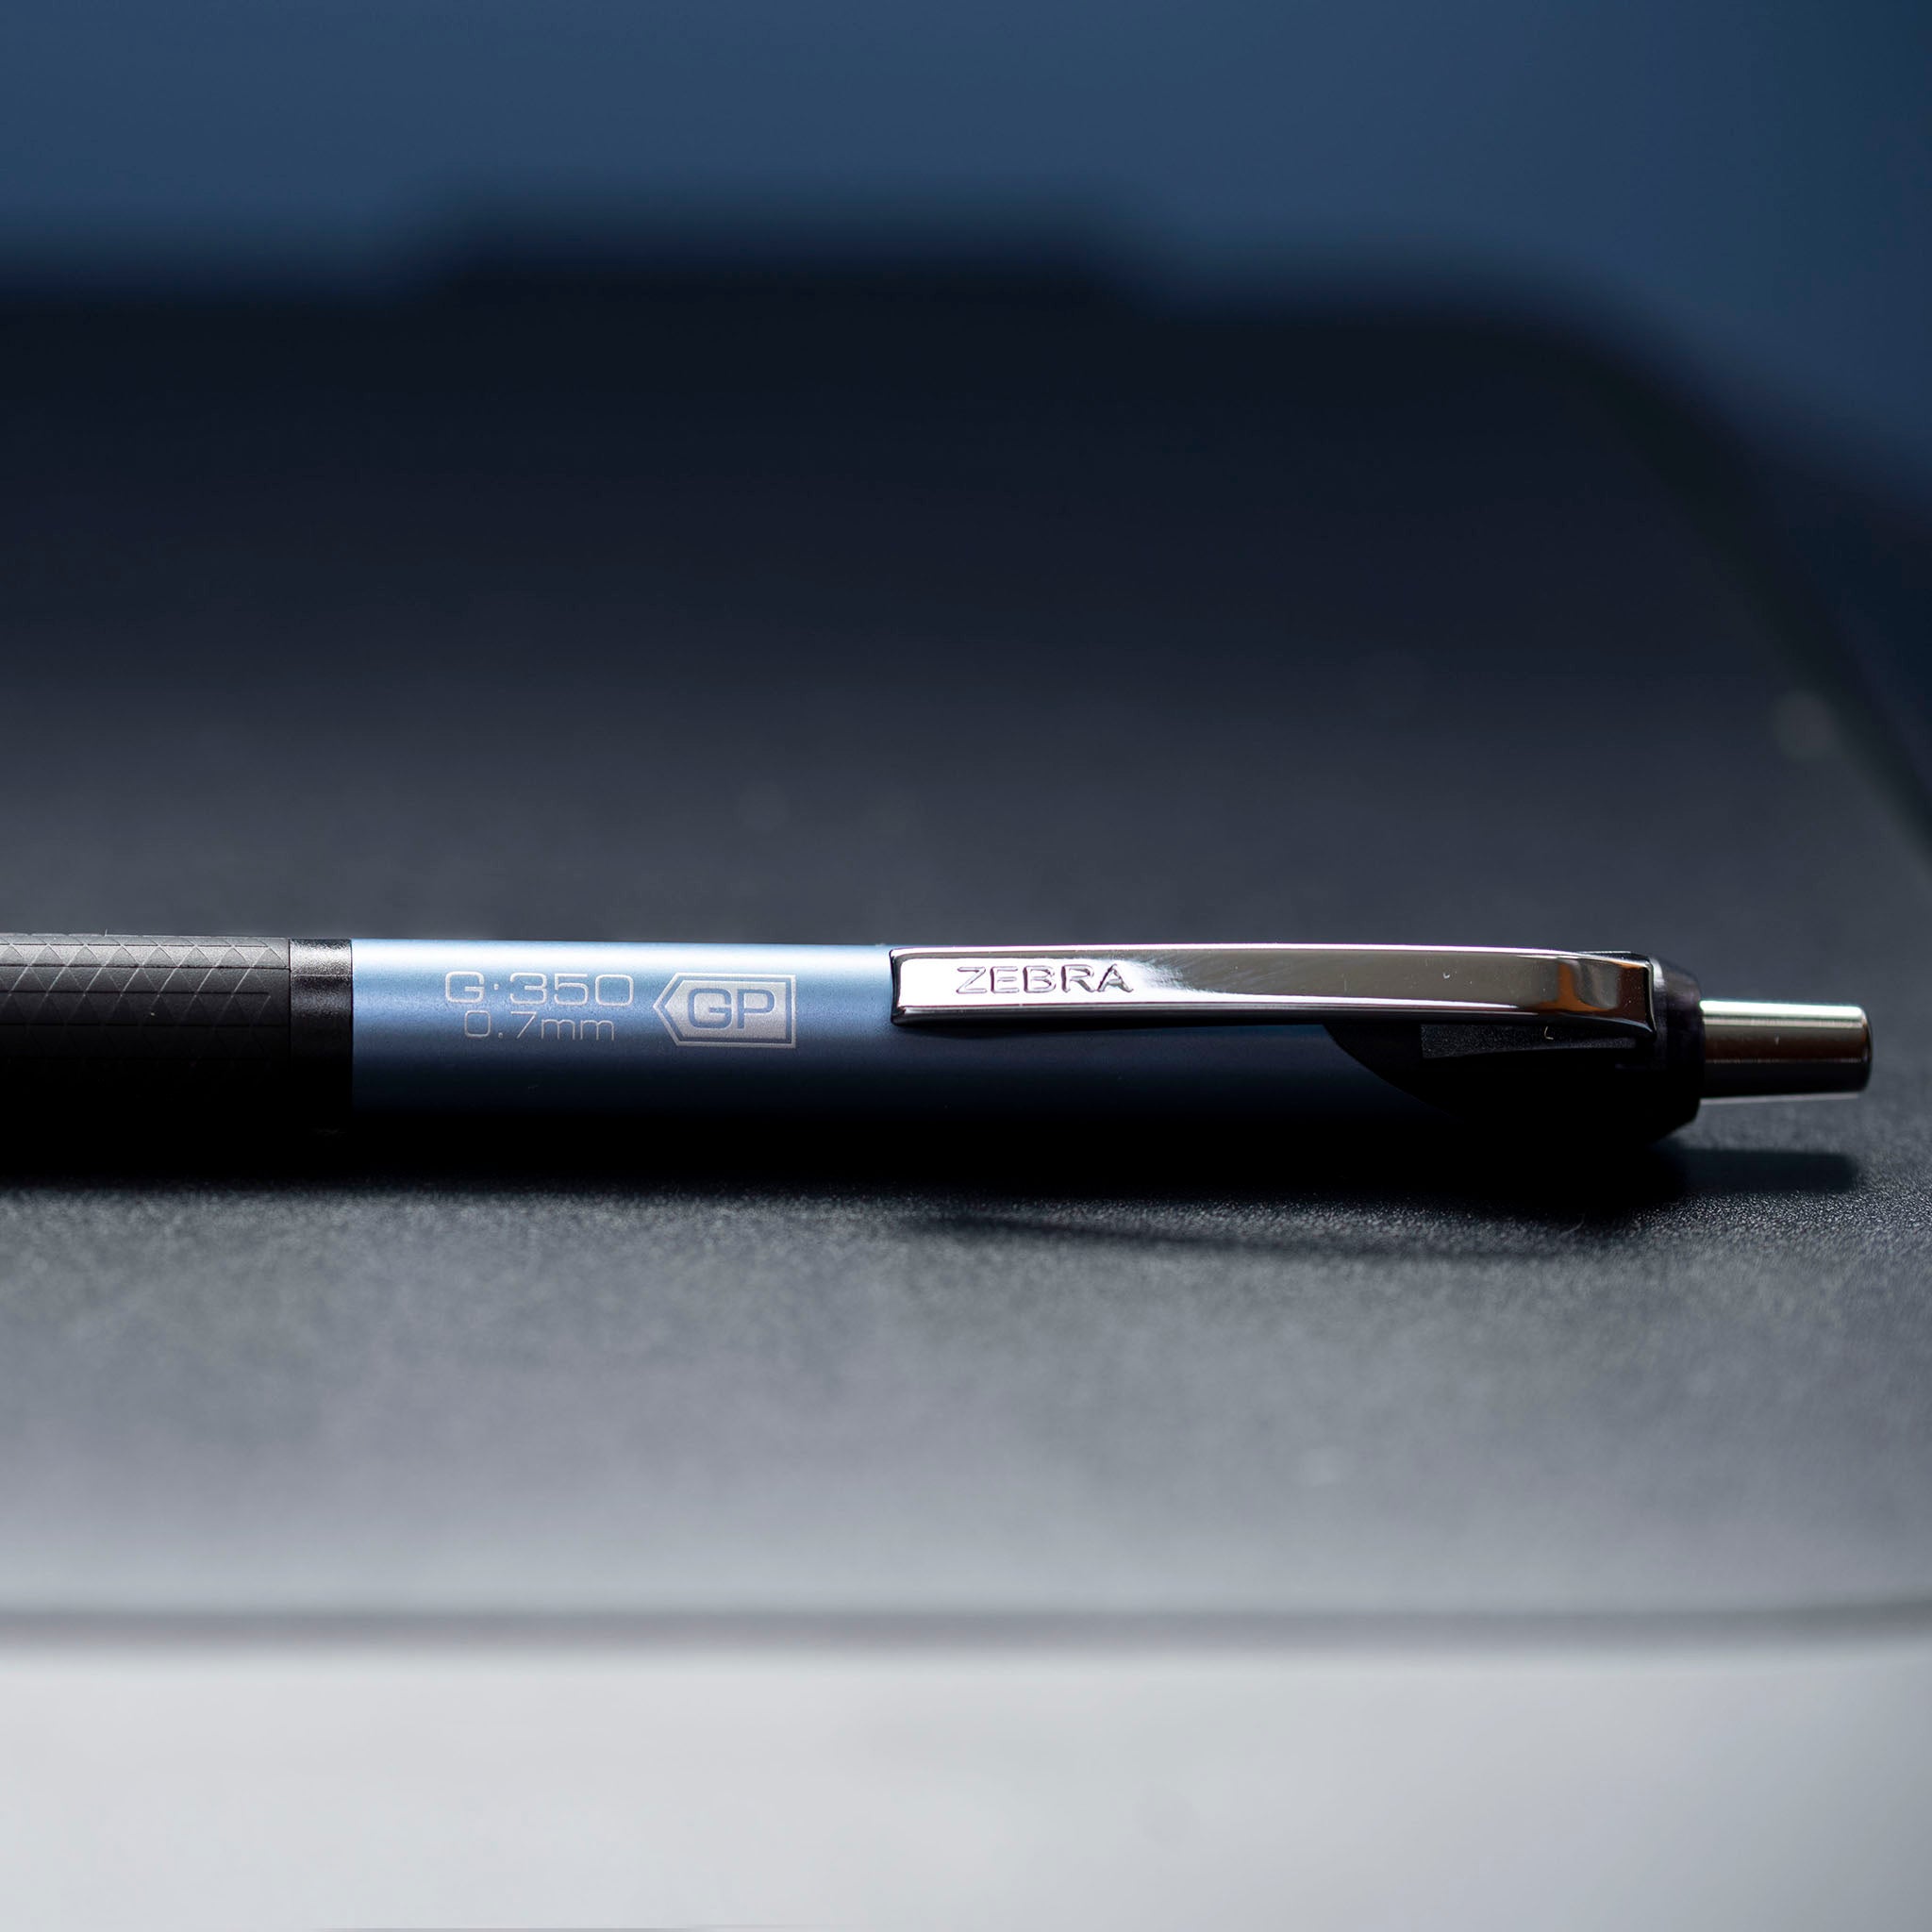 Zebra Pen G-350 Gel Pen - 0.7 mm Pen Point Size - Refillable - Cobalt Blue, Black Gel-based Ink - Metal Barrel - 1 / Pack